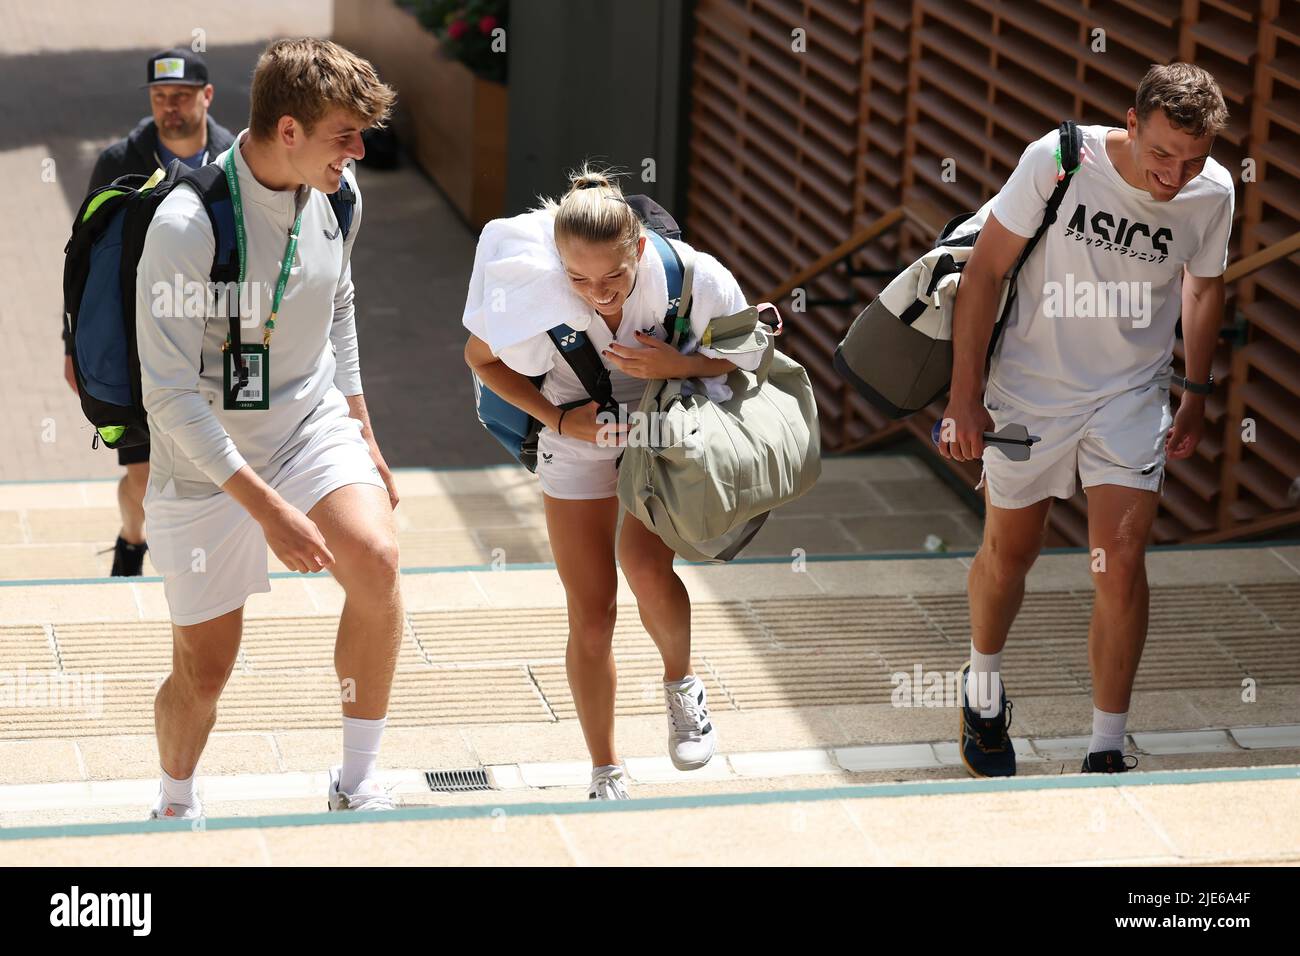 25th de junio de 2022, All England Lawn Tennis and Croquet Club, Londres, Inglaterra; torneo de Wimbledon Tennis; Katie Swan riendo con su equipo de entrenamiento después de su sesión de práctica Foto de stock